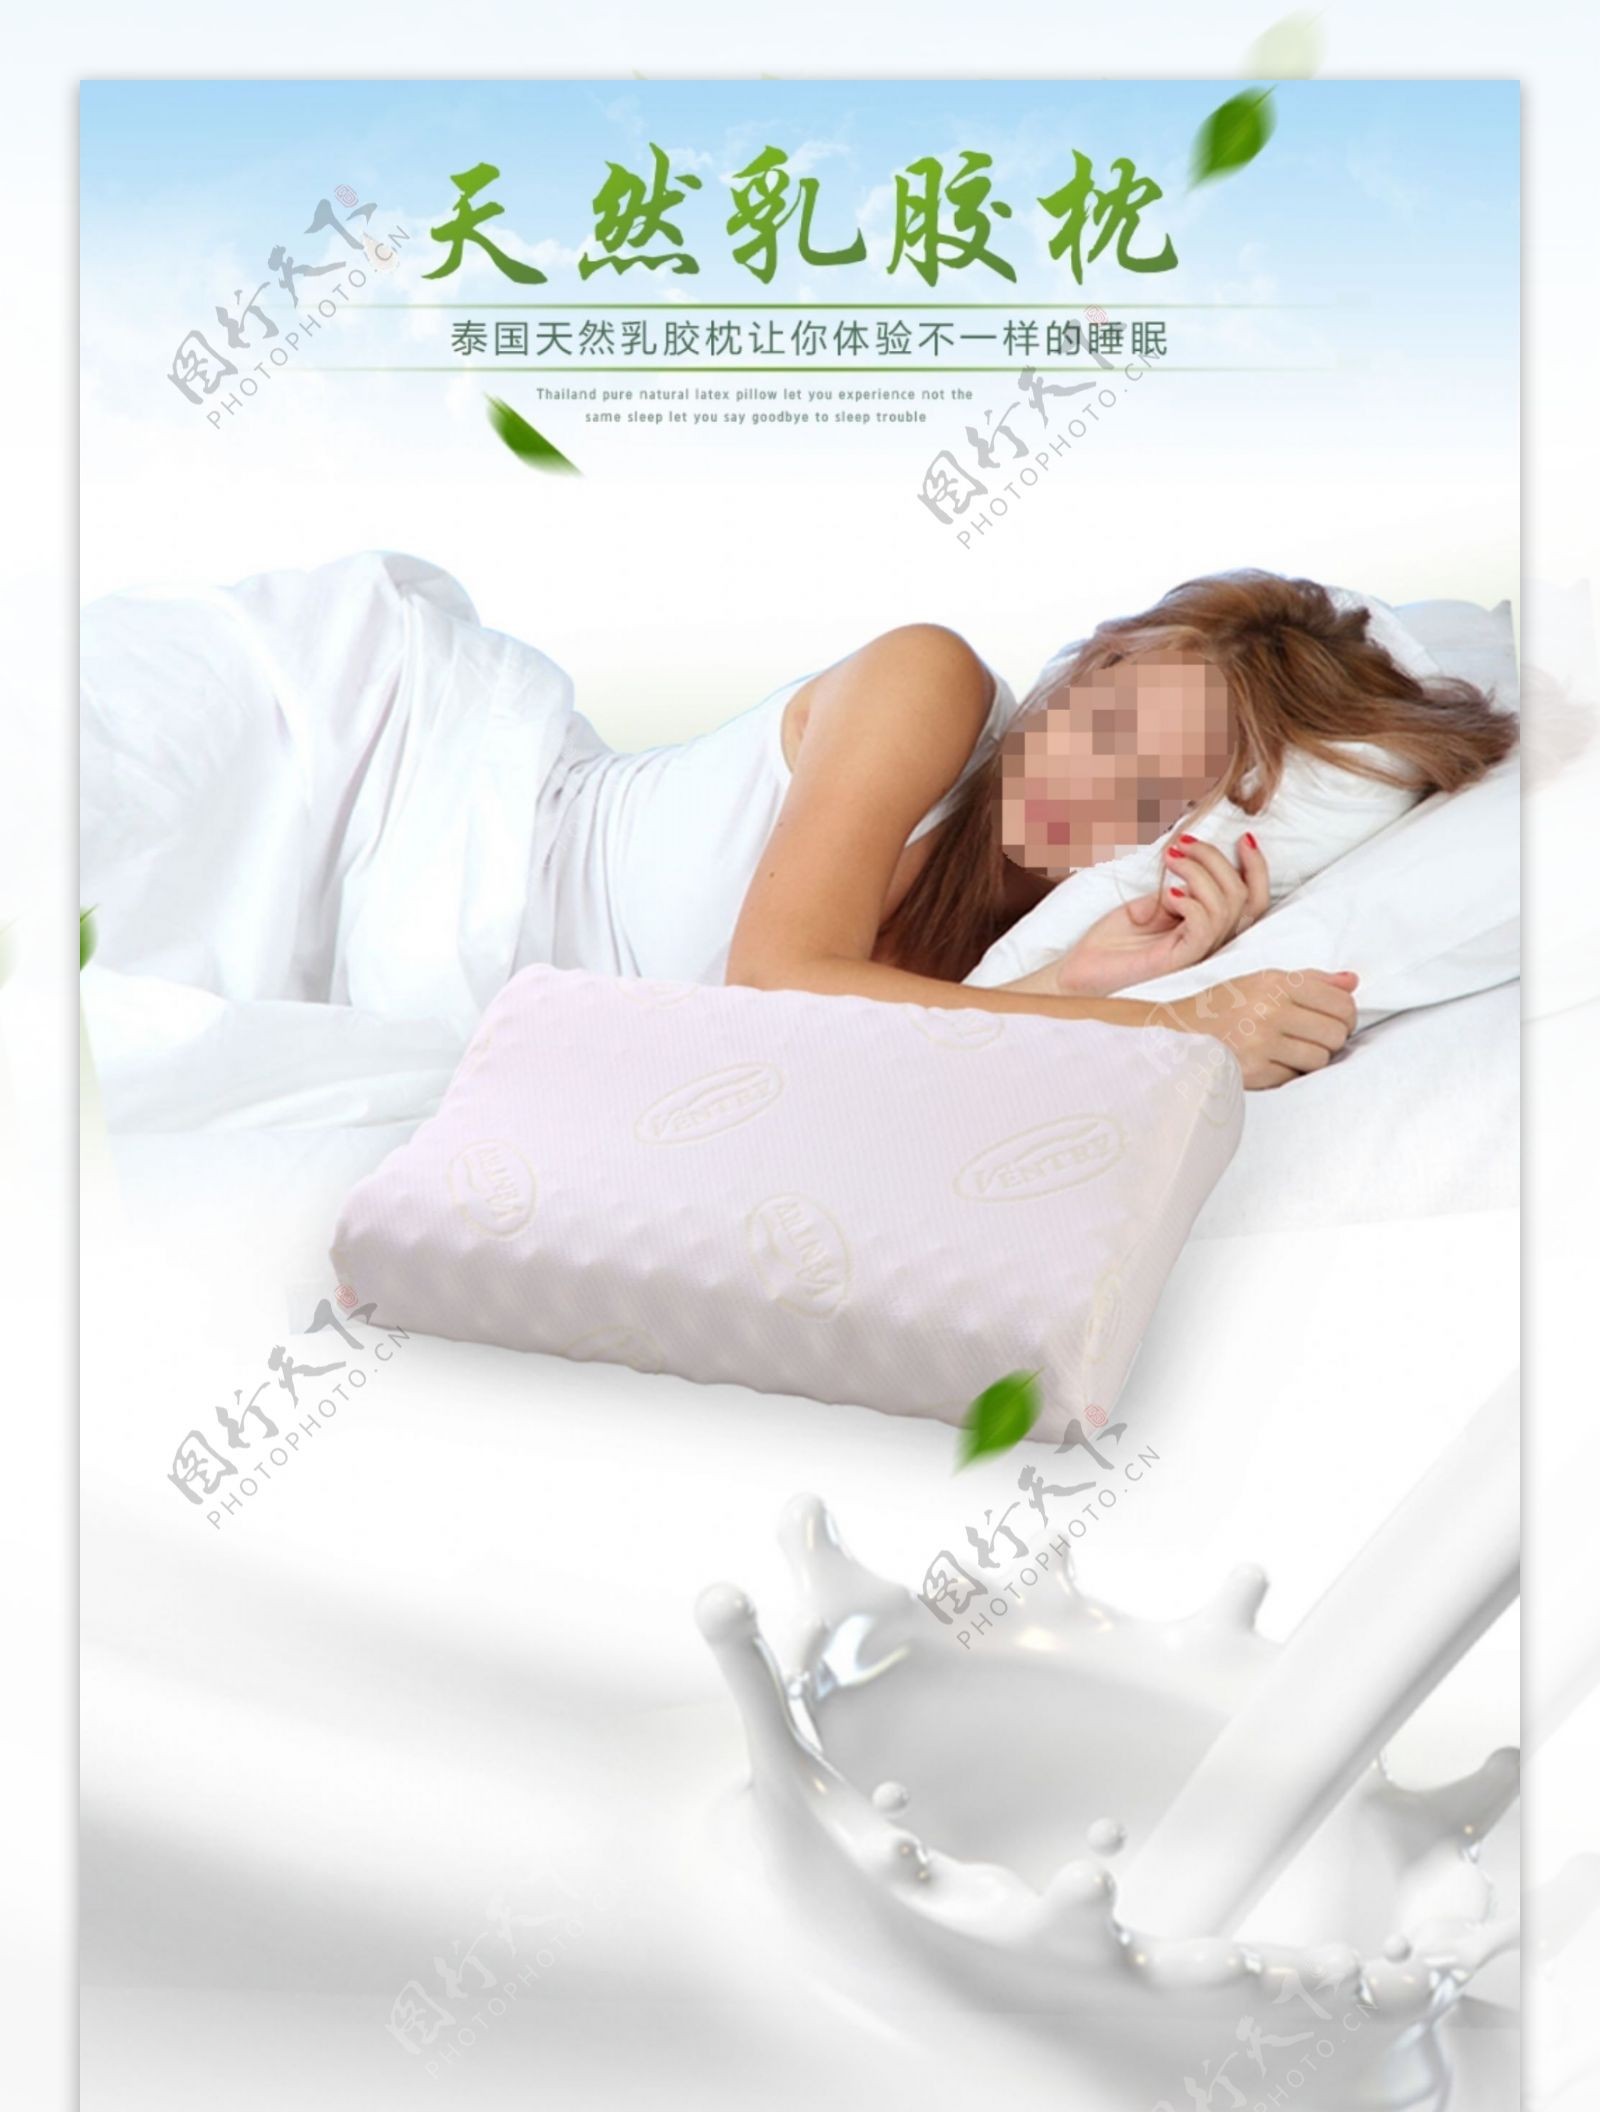 电商淘宝绿色清新环保乳胶枕日用品详情页模板